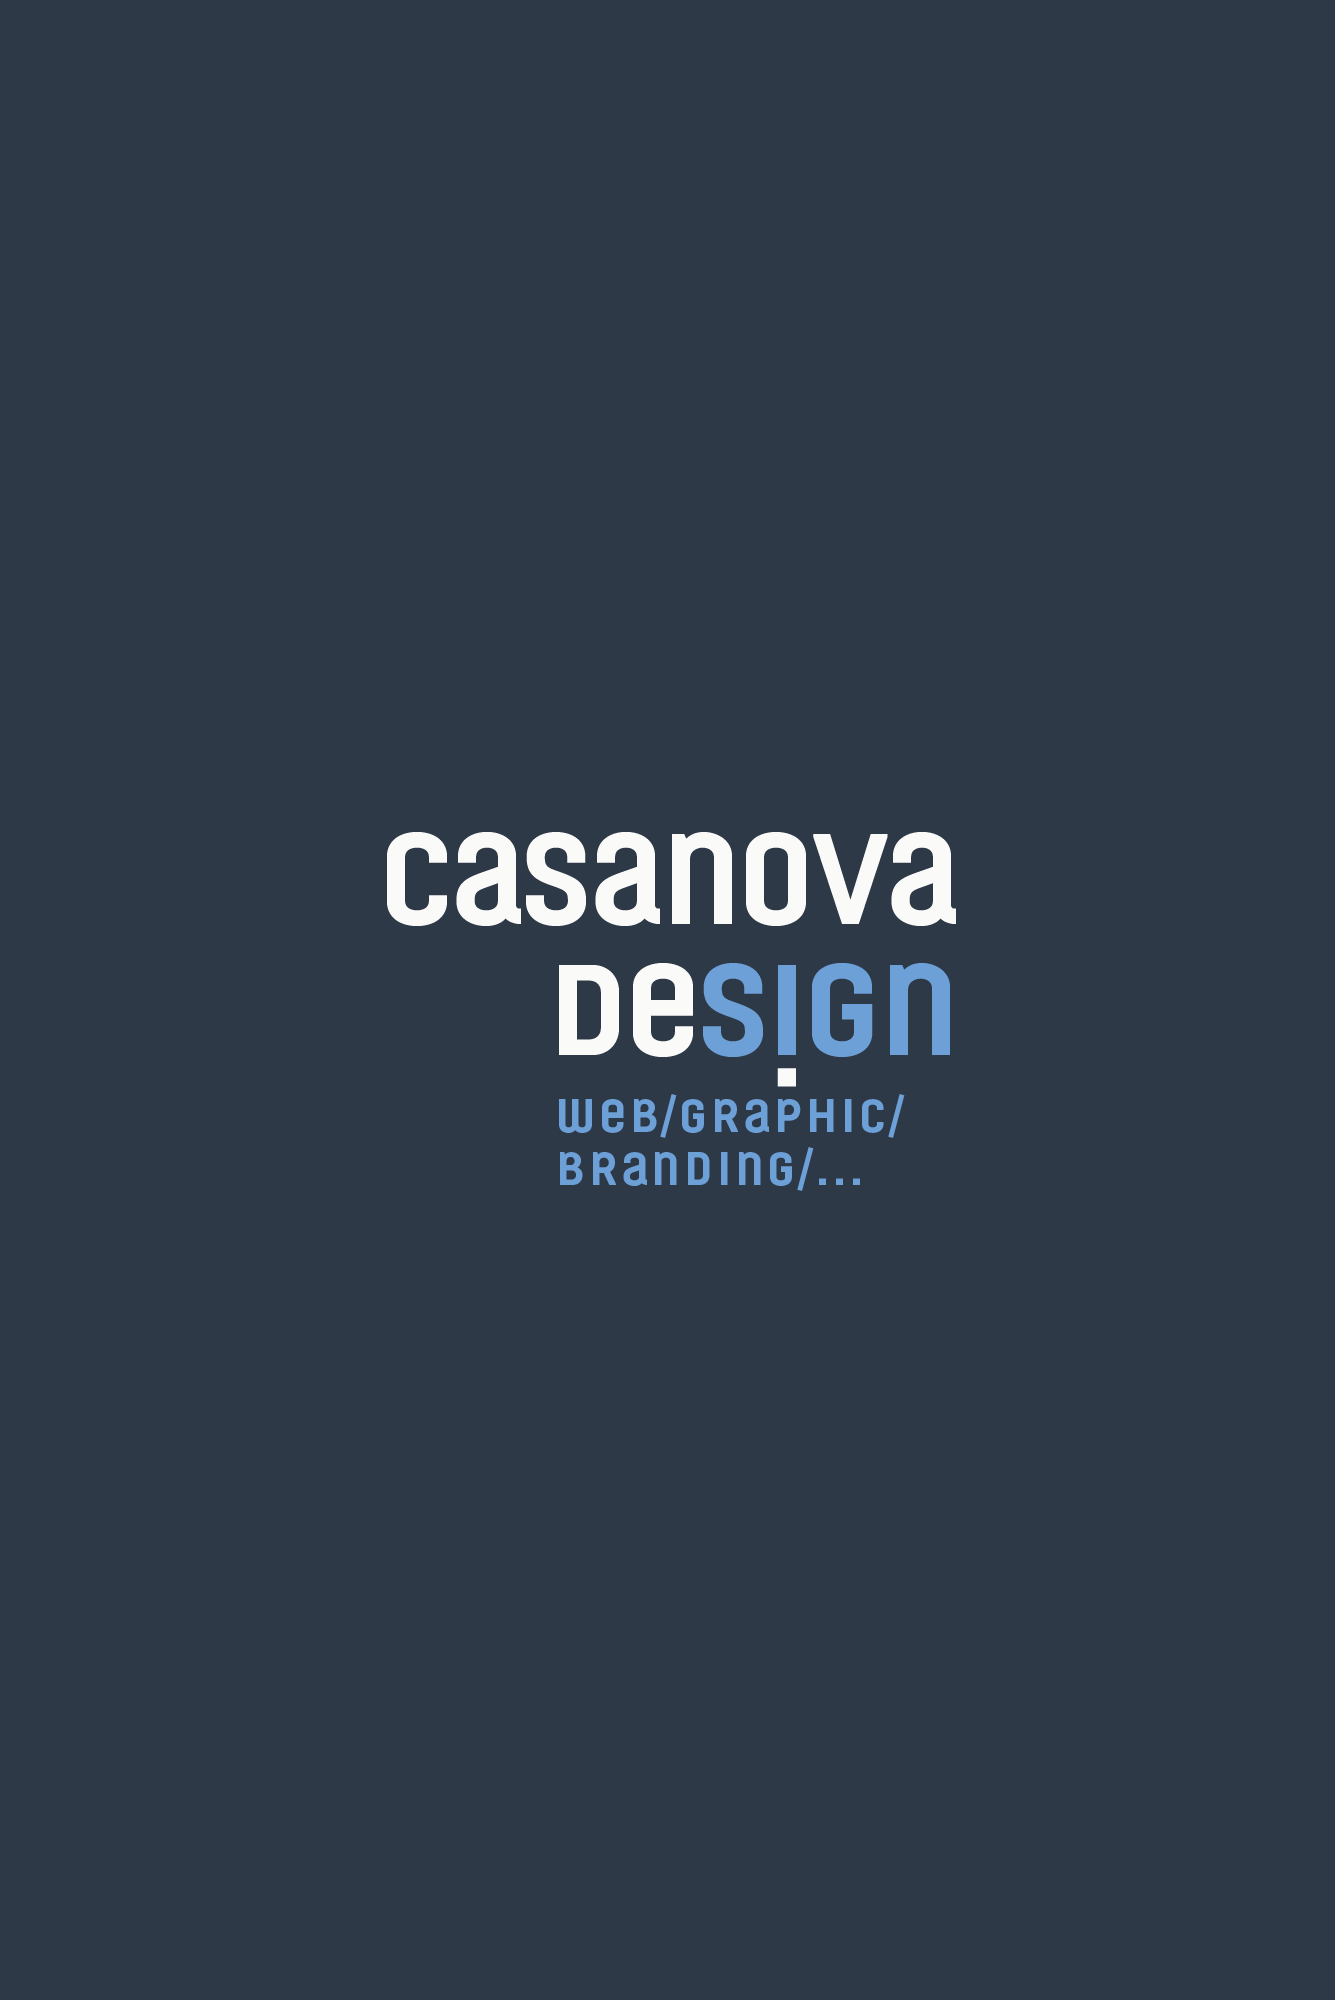 Casanova Design - web and graphic